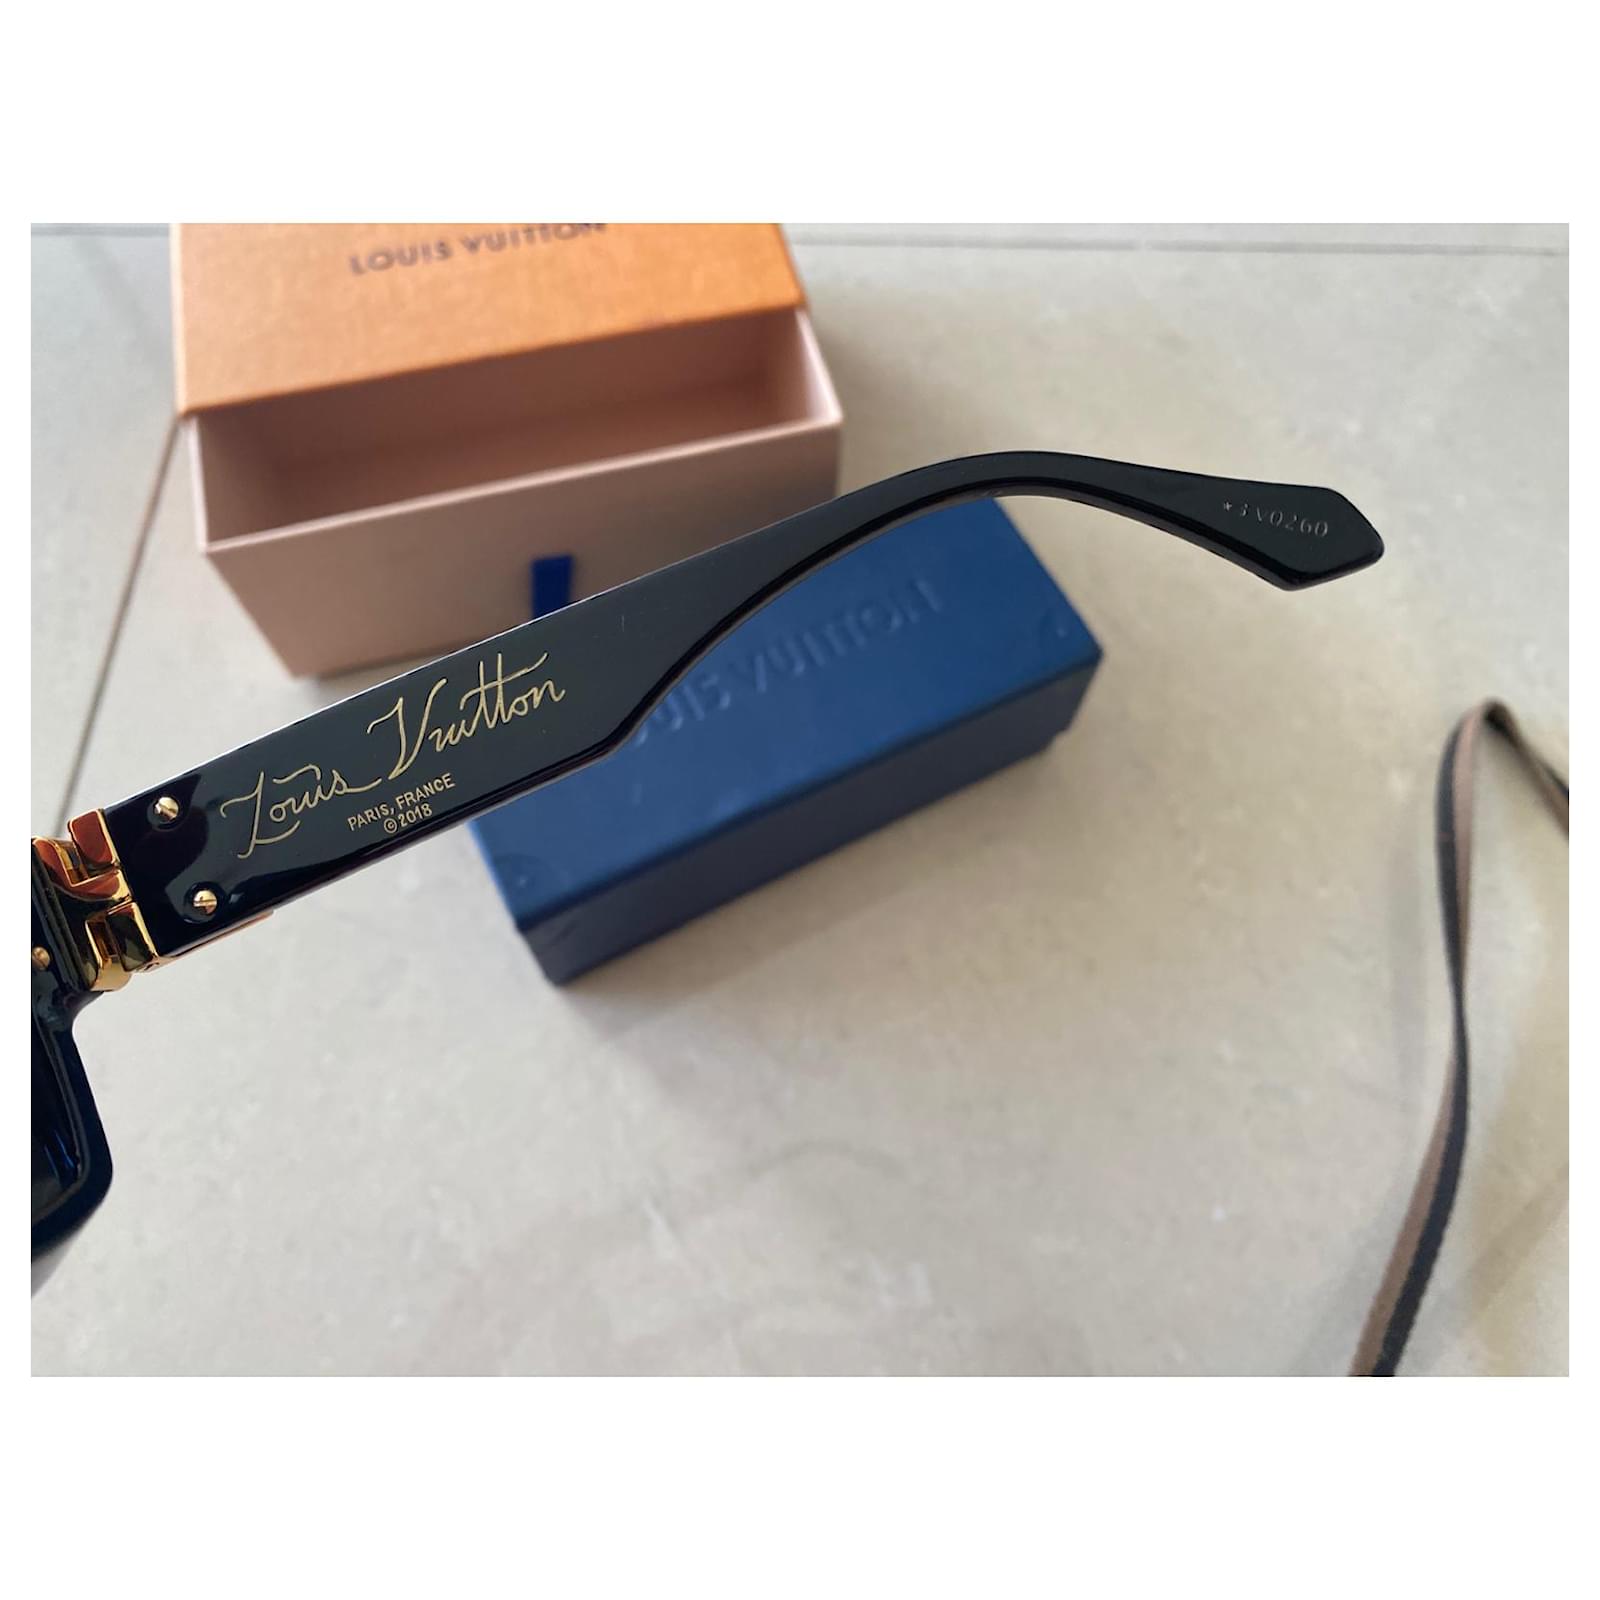 Louis Vuitton 1.1 Millionaires Acetate Black Sunglasses – The